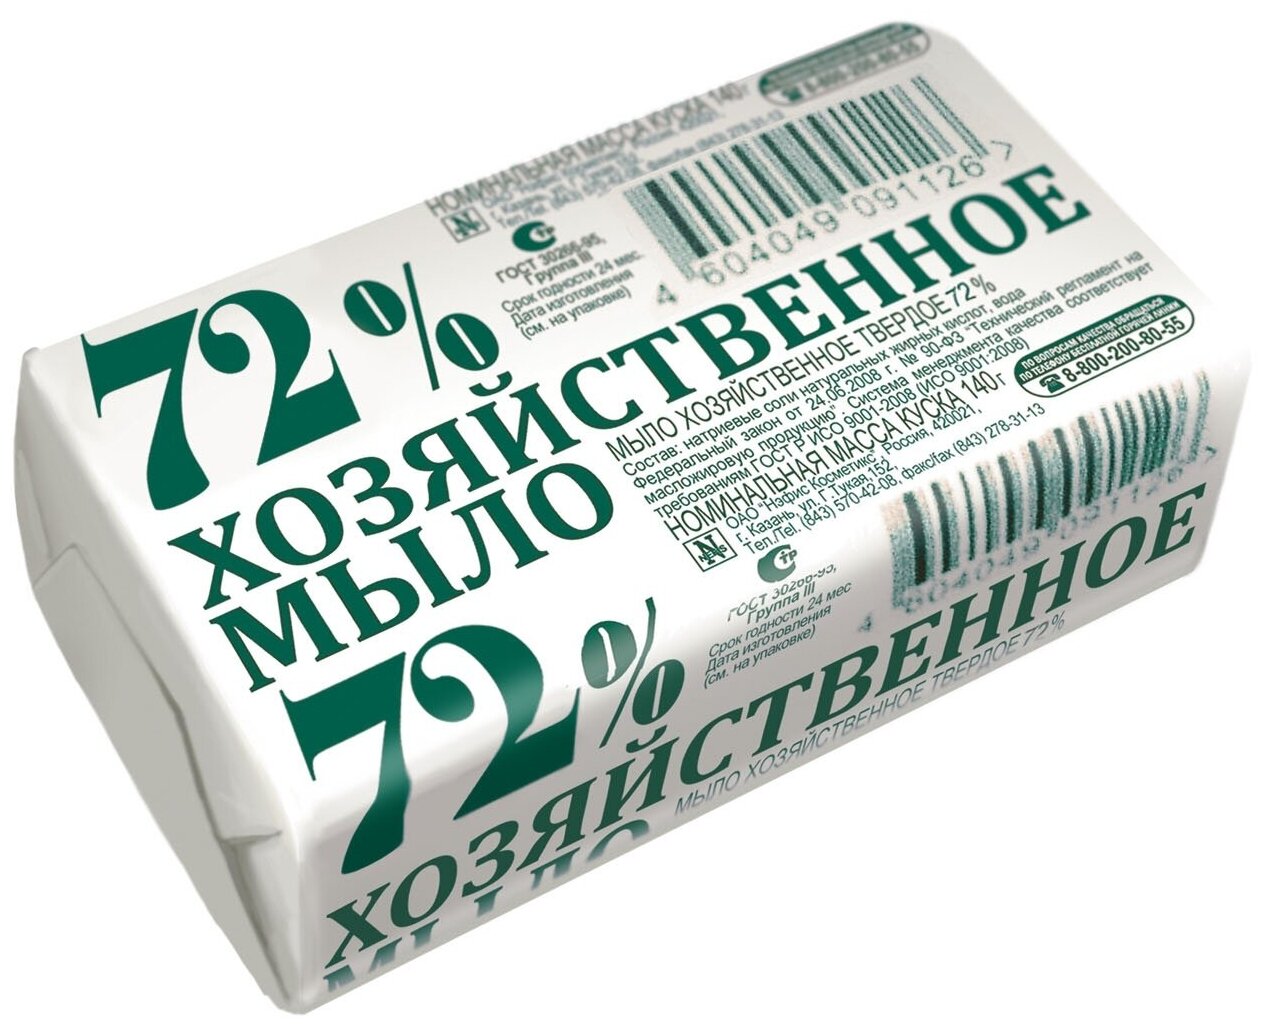 Хозяйственное мыло Нэфис Косметикс в упаковке 72%, без отдушки, 0.14 кг